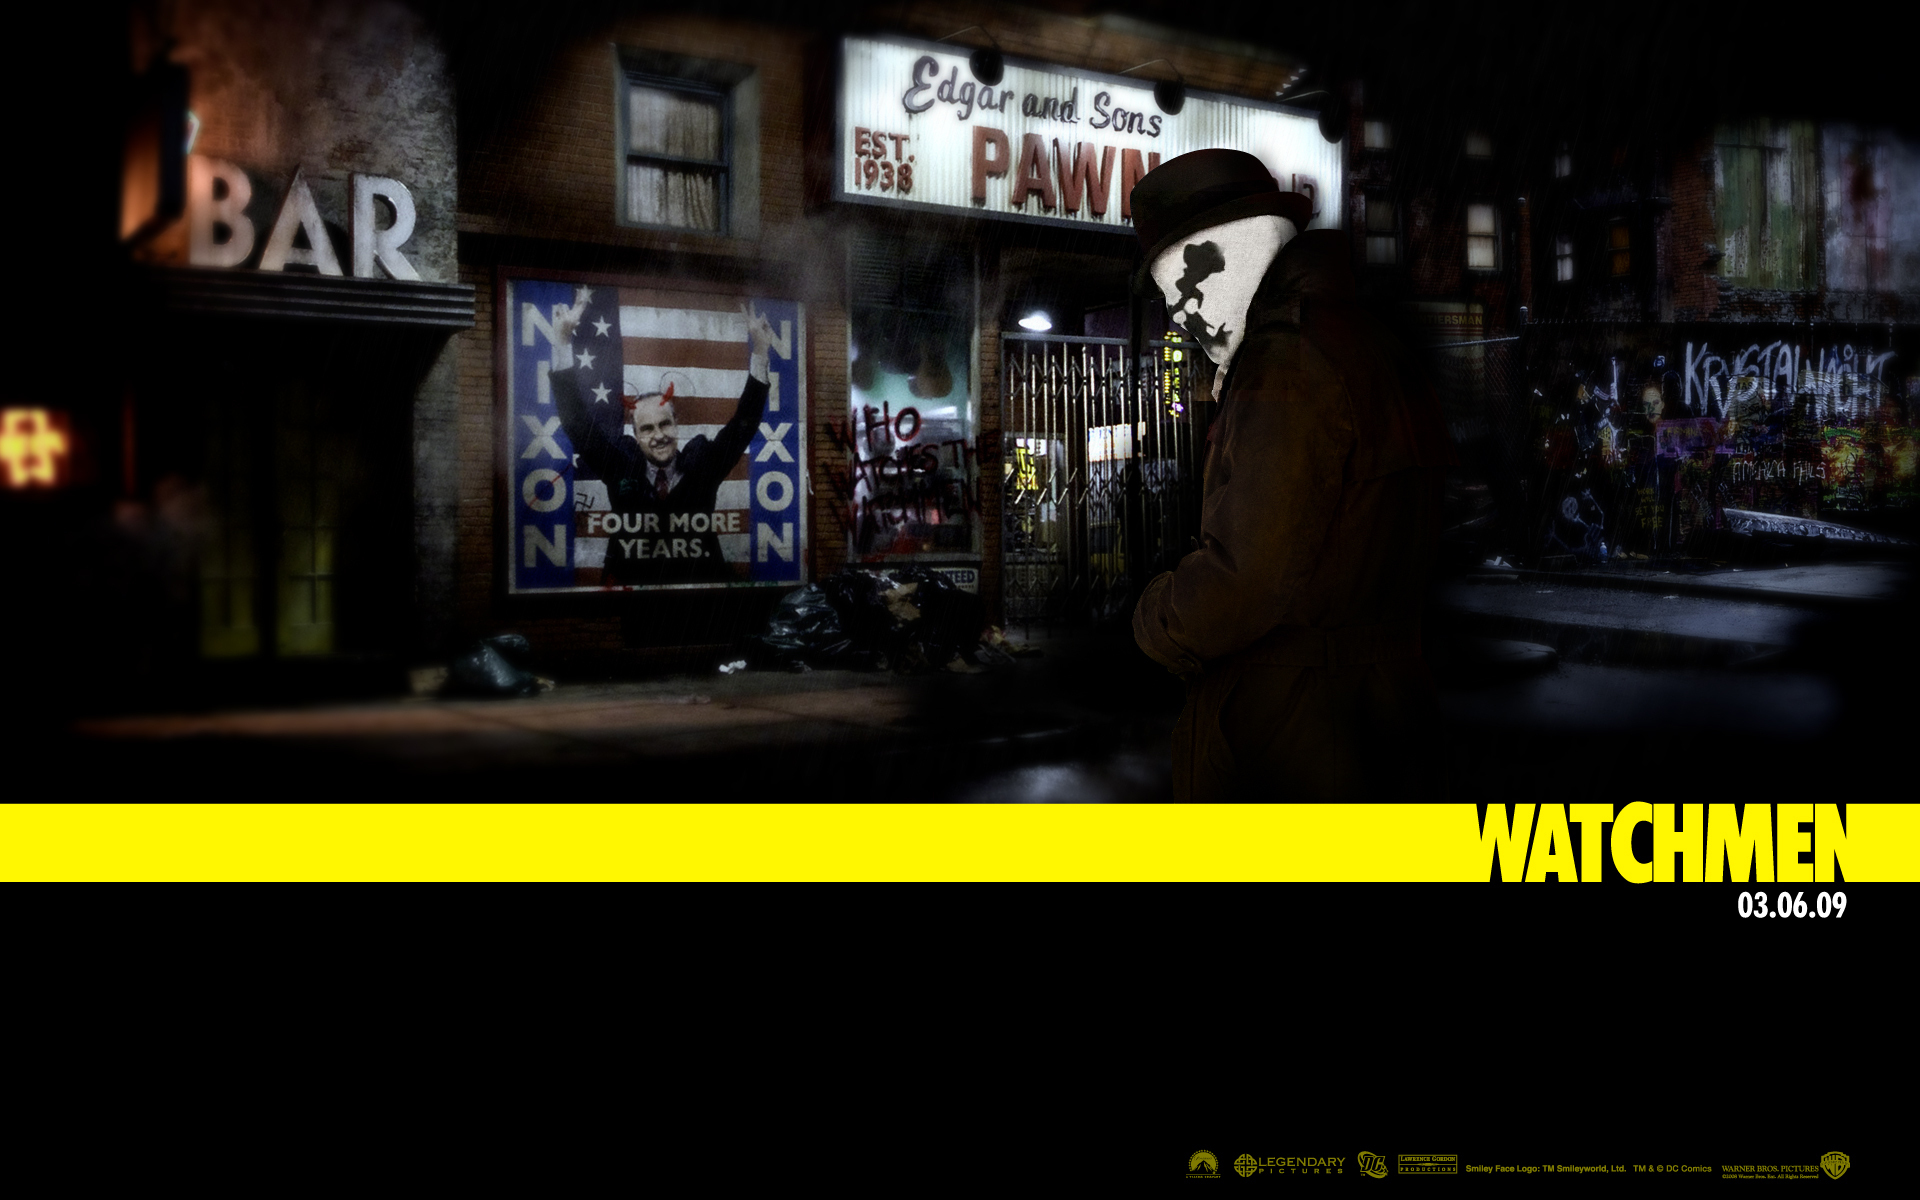 Rorschach Watchmen Wallpaper